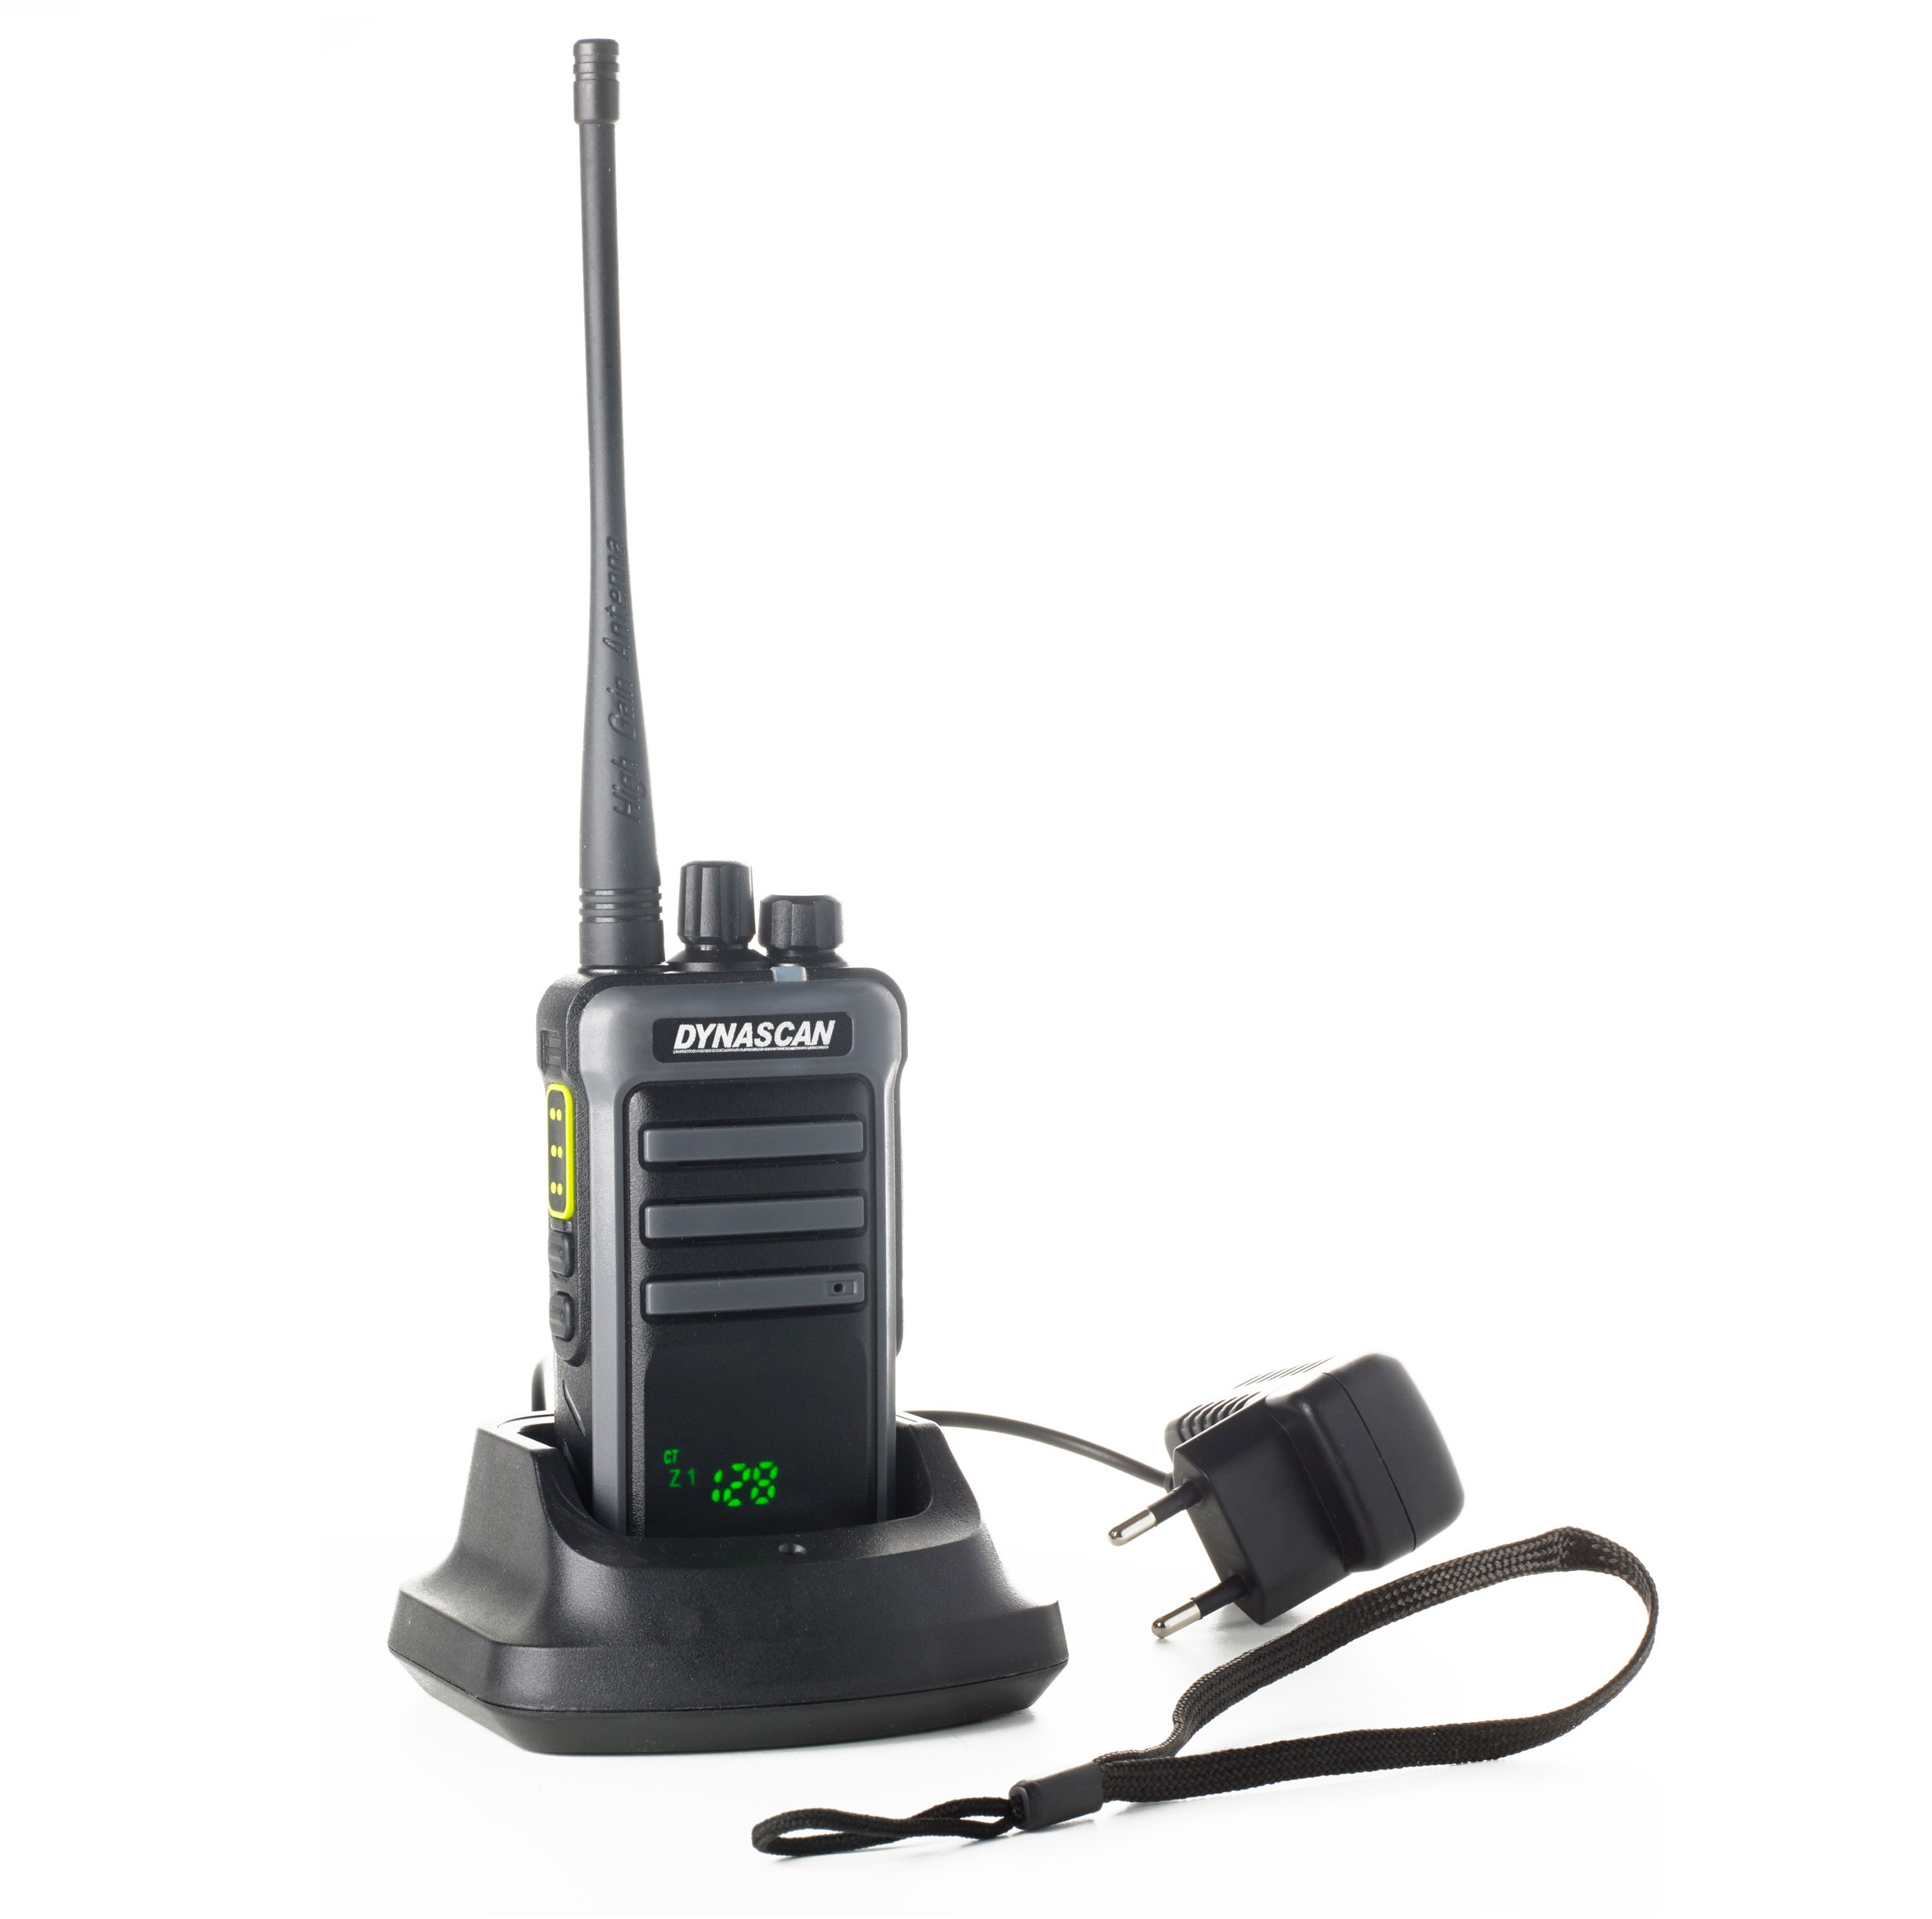 Dynascan RL-300 walkie homologat caa Catalunya